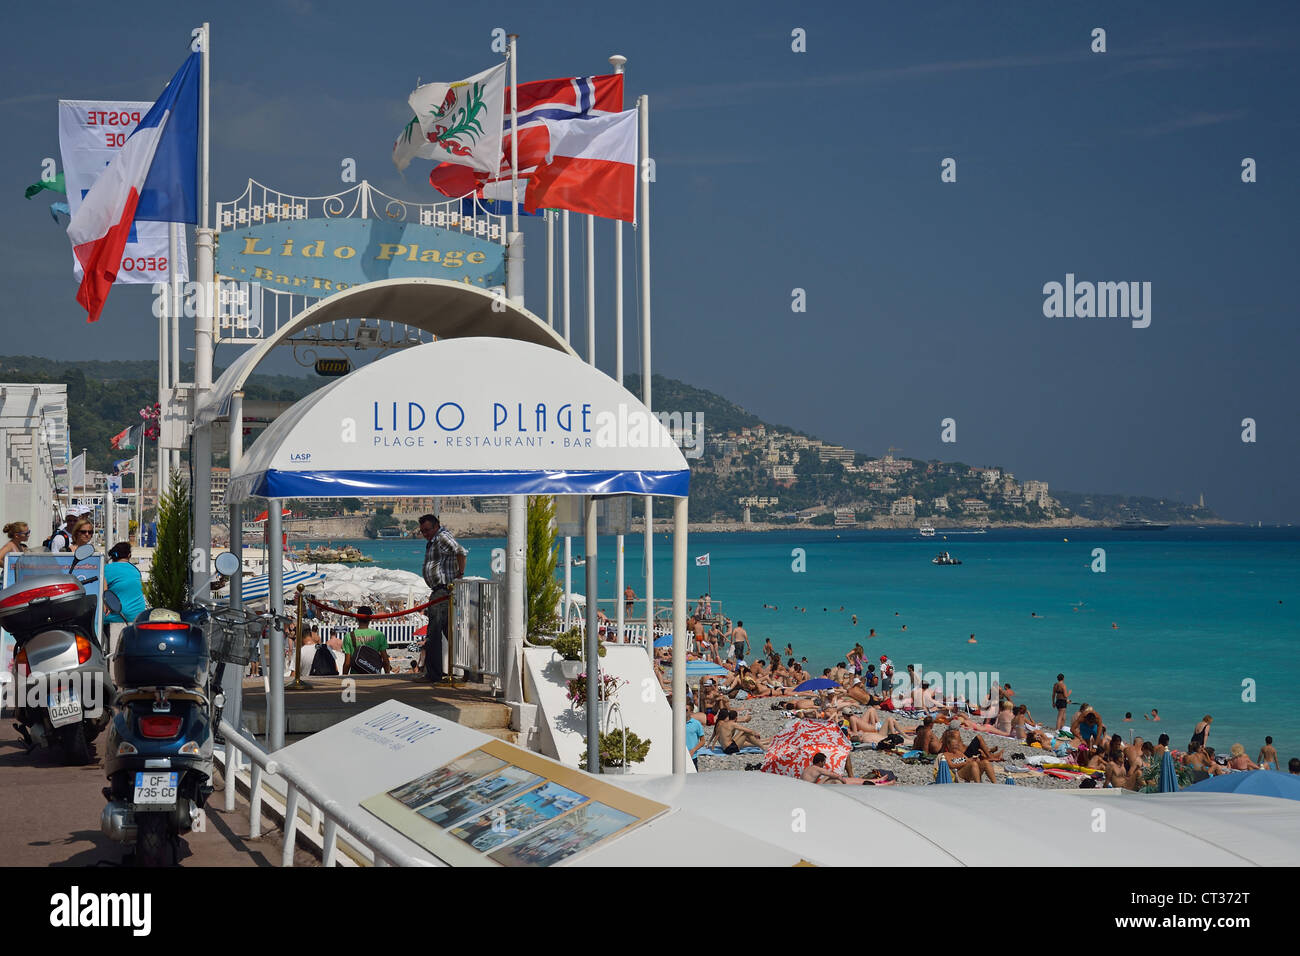 Lido Plage bar & ristorante, Promenade des Anglais, Nizza Côte d'Azur, Alpes-Maritimes, Provence-Alpes-Côte d'Azur, in Francia Foto Stock